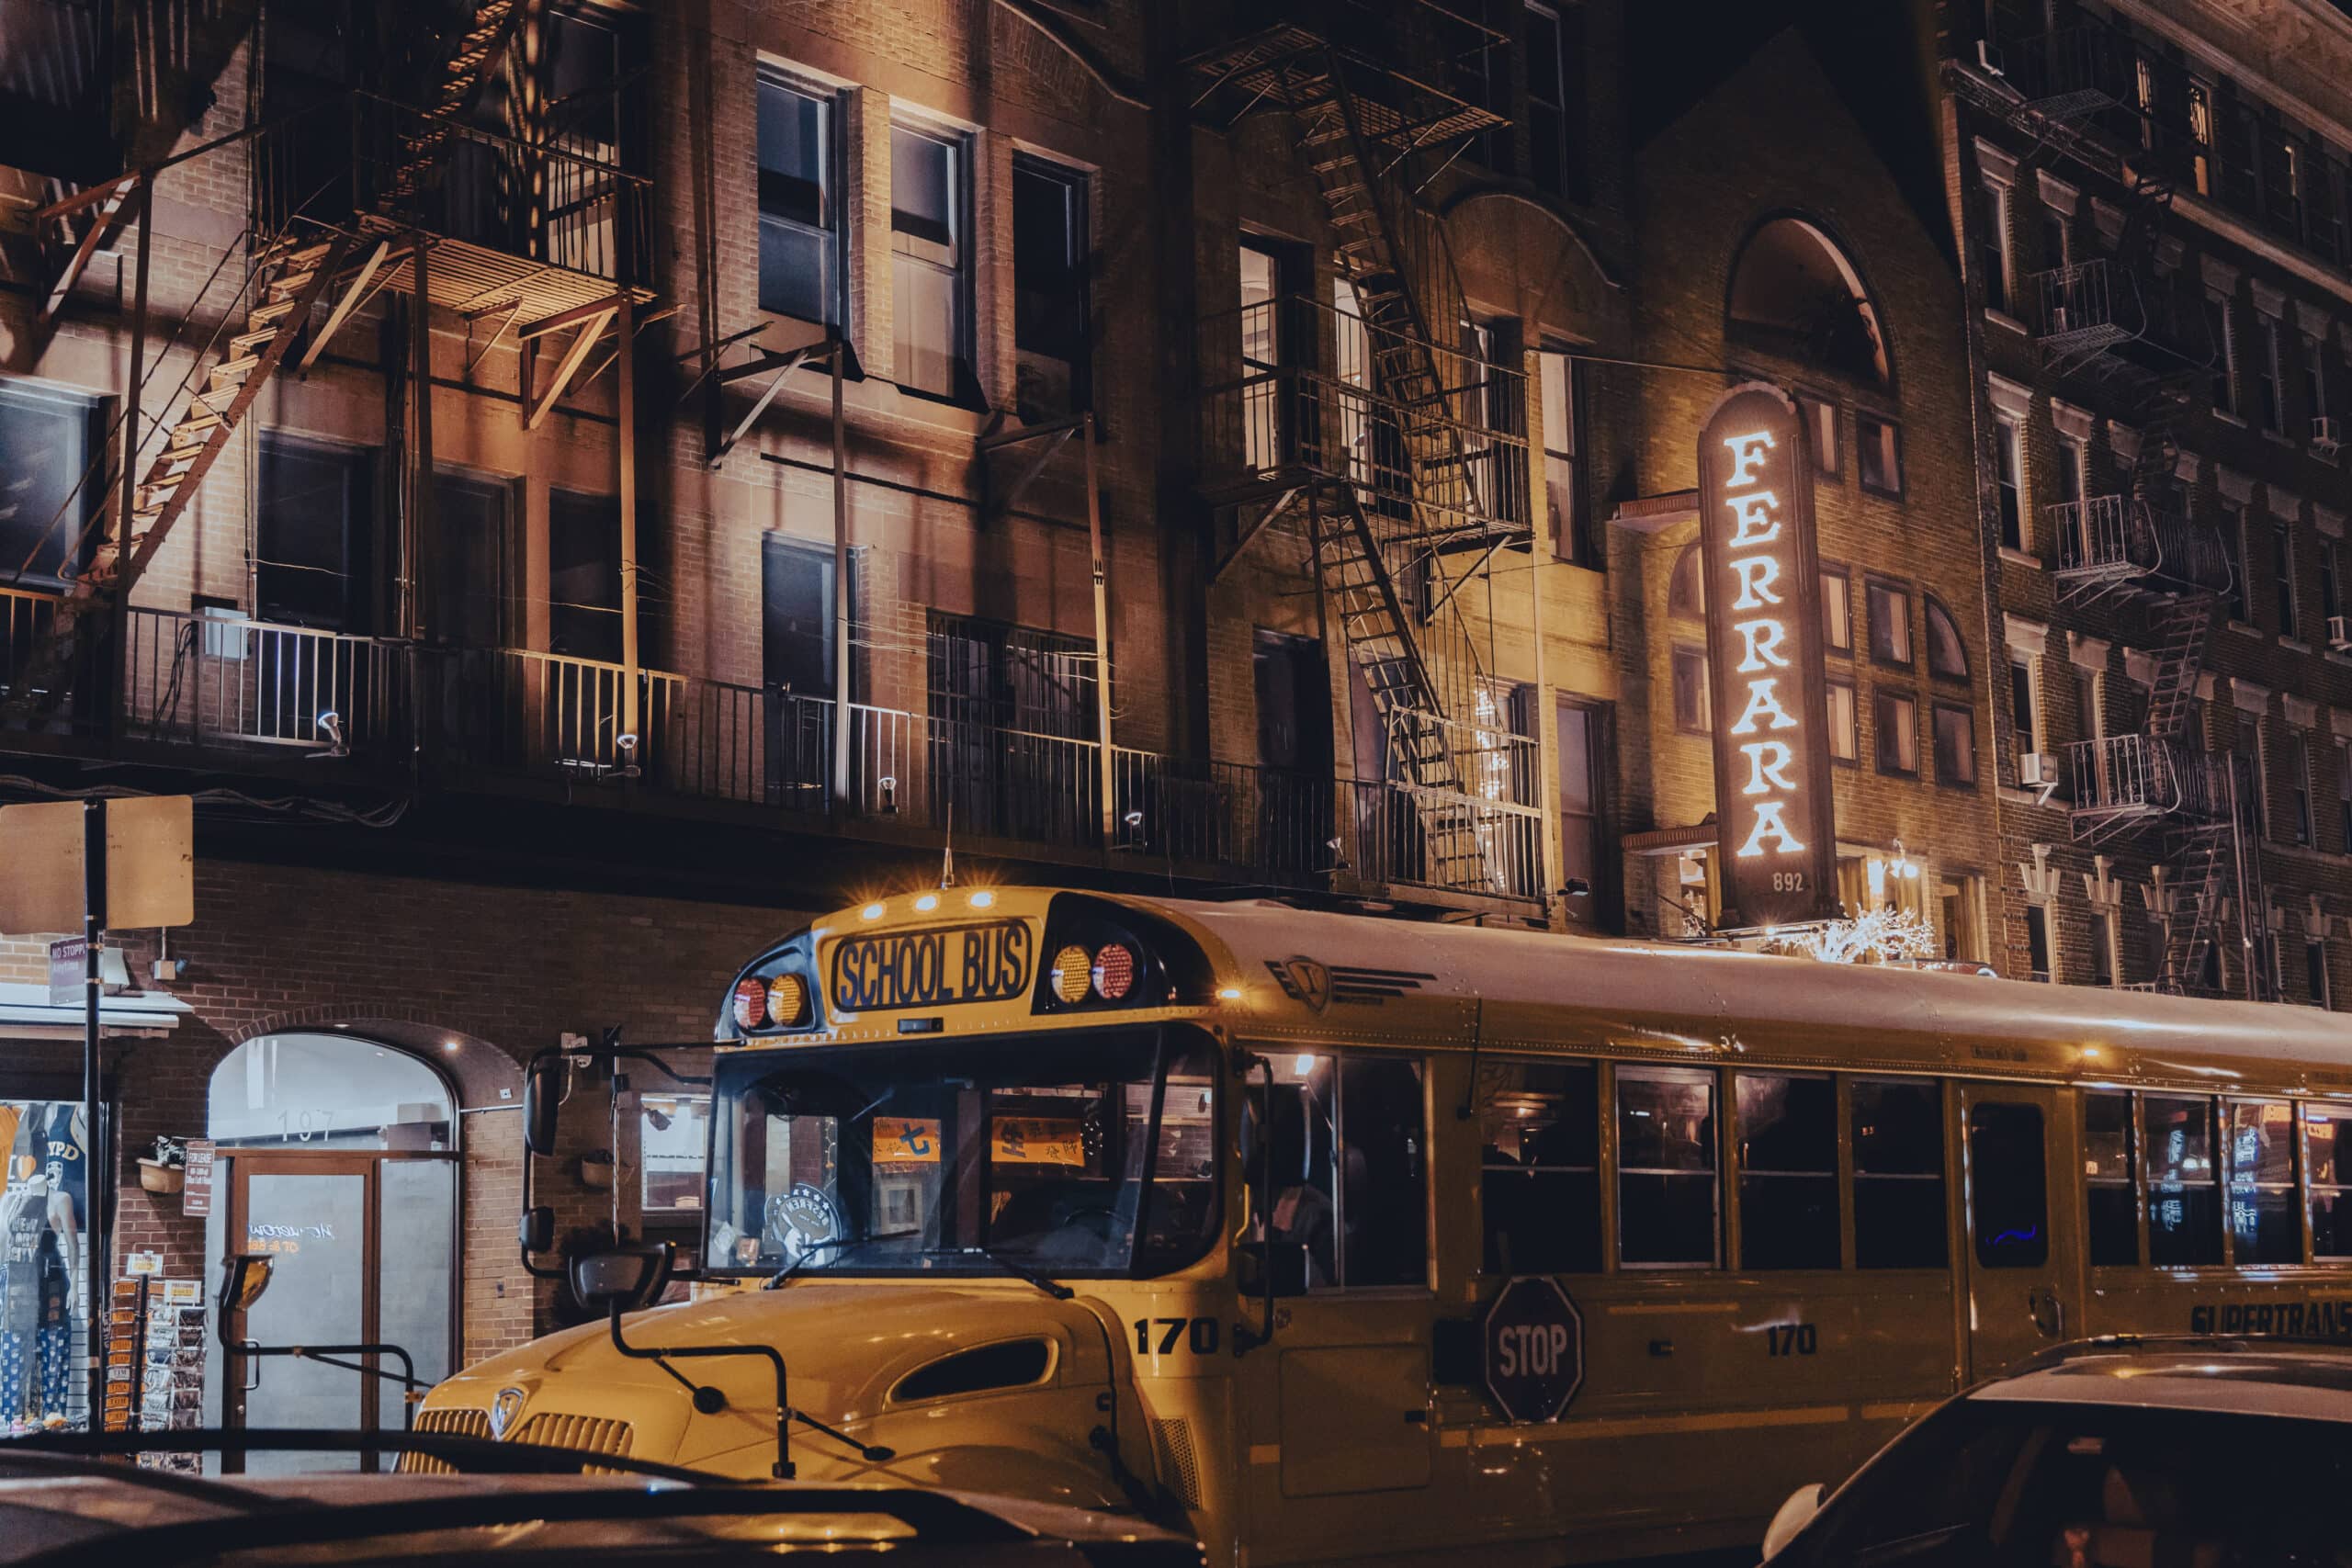 Ein gelber Schulbus parkt nachts auf einer Stadtstraße. Im Hintergrund sind beleuchtete Schilder und Gebäude zu sehen, die eine geschäftige Stadtatmosphäre schaffen. © Fotografie Tomas Rodriguez